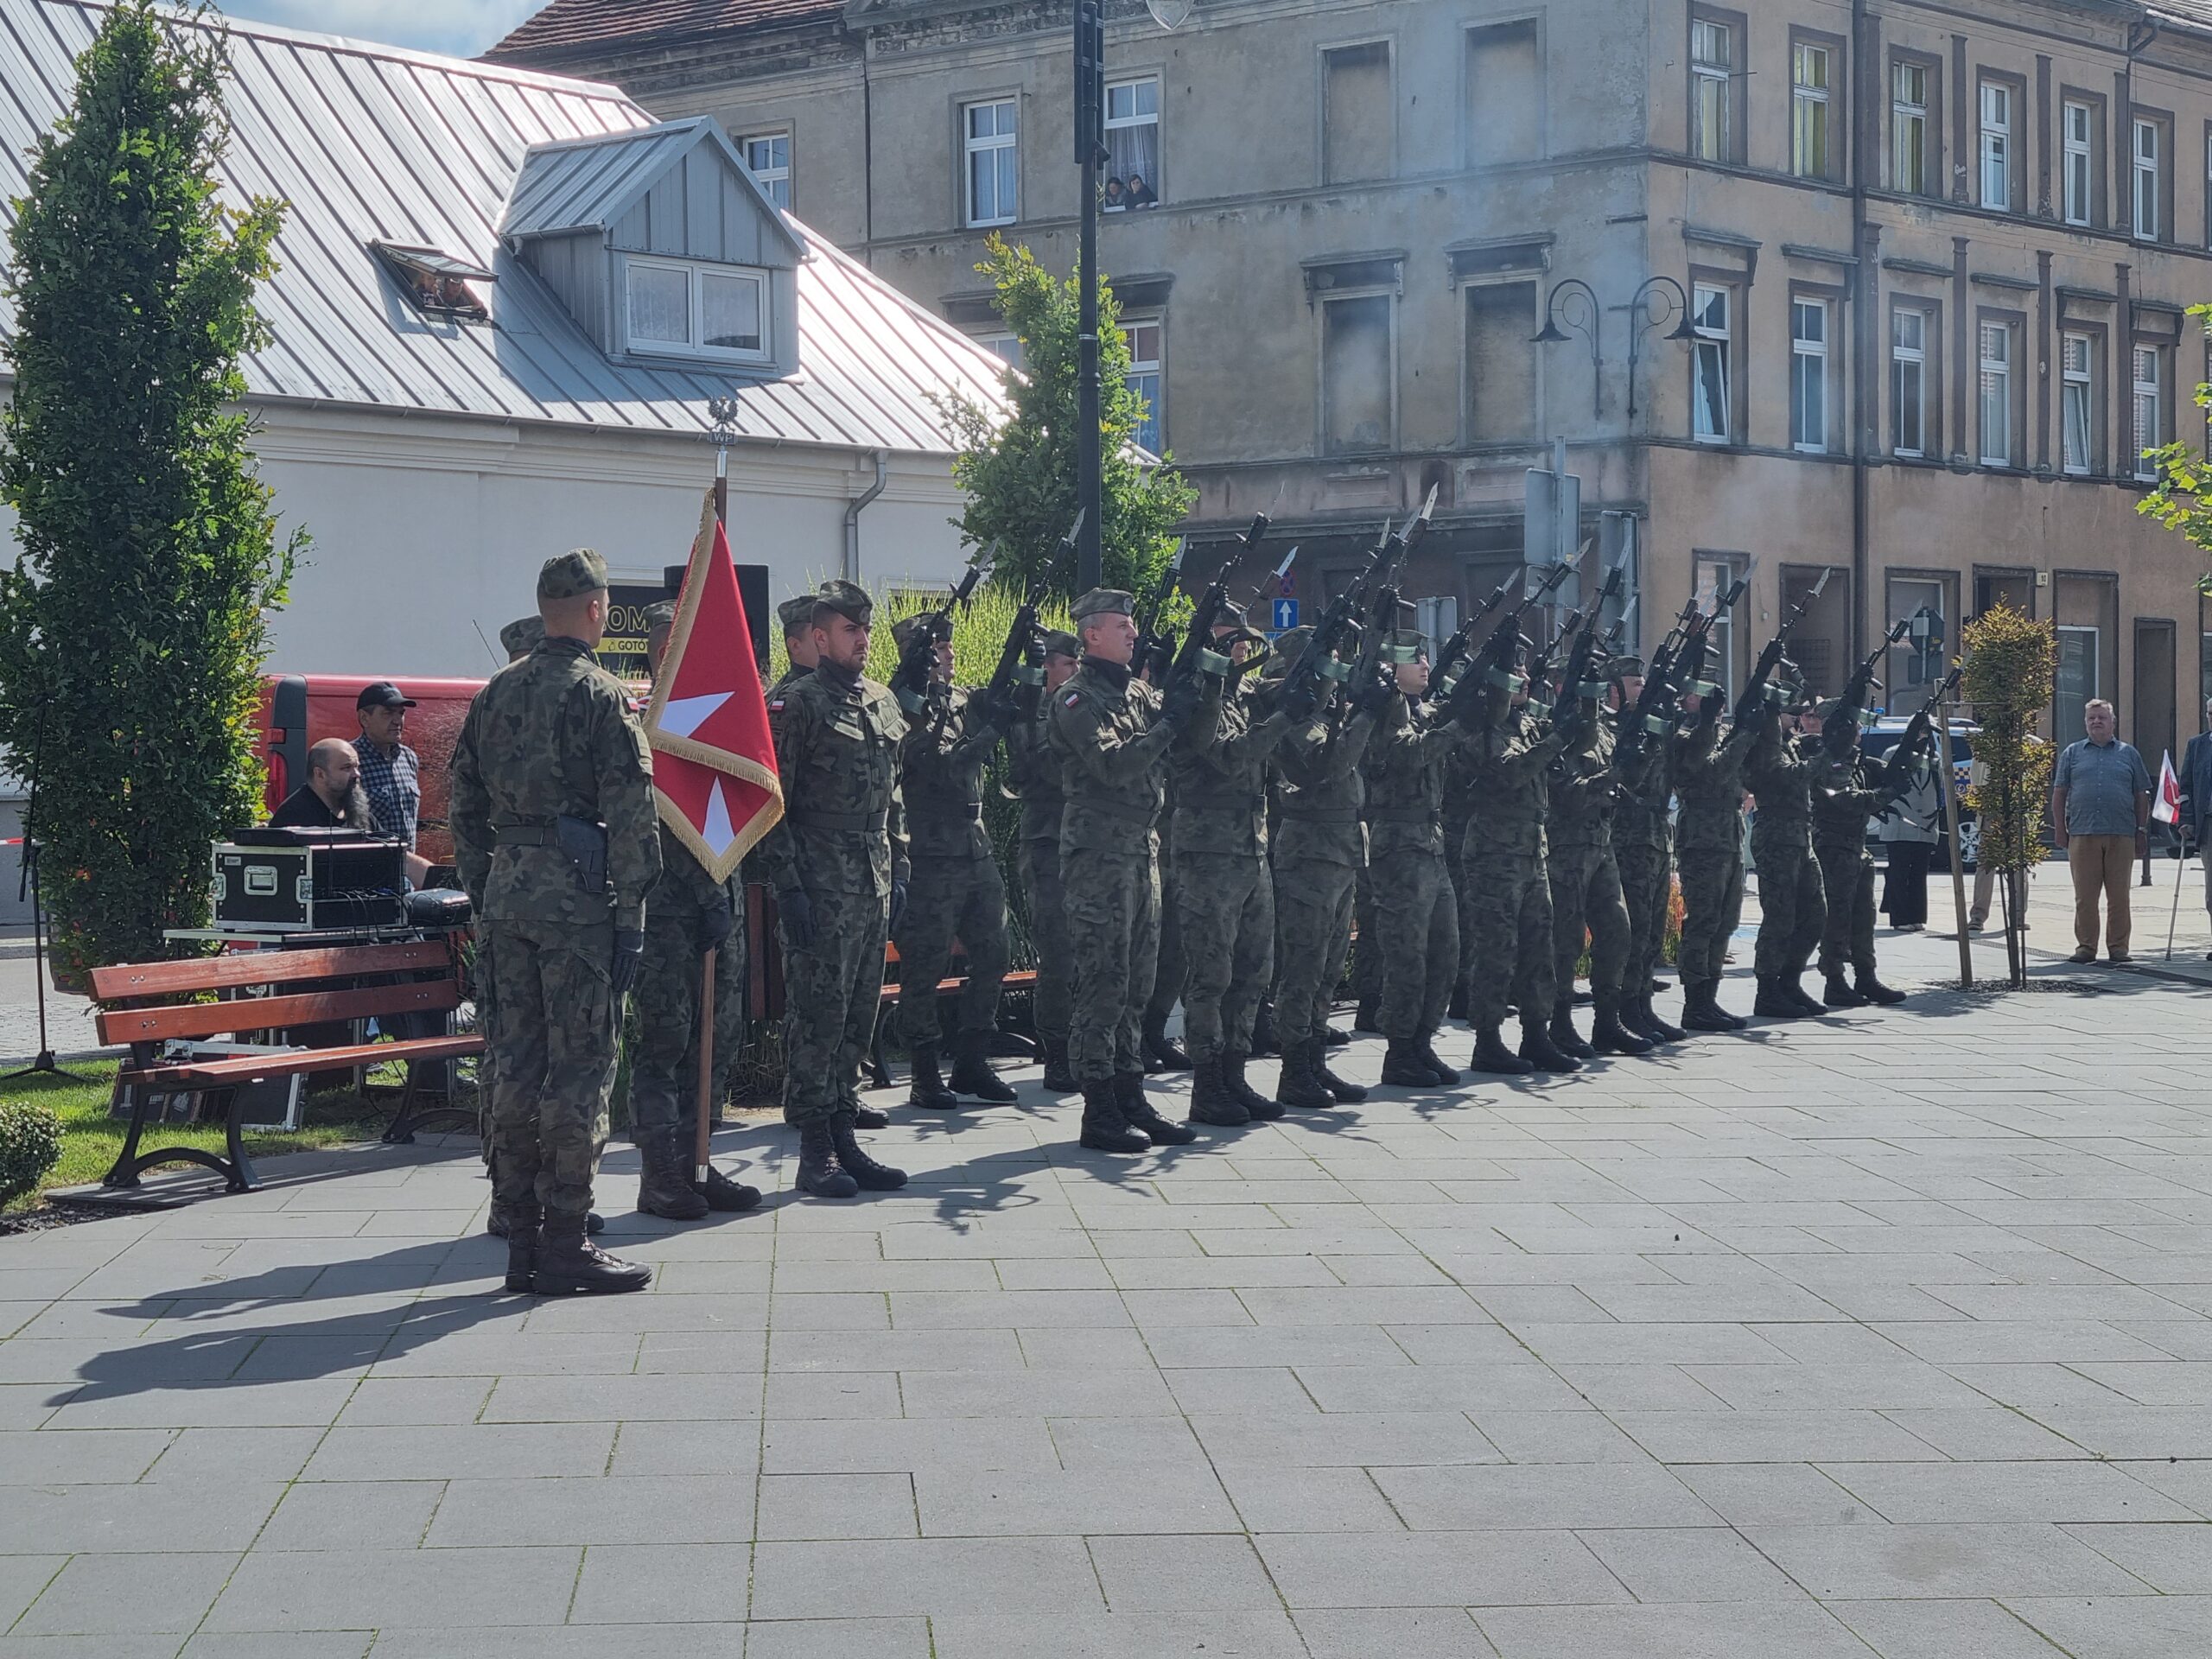 Kompania Honorowa 16. Batalionu Remontu Lotnisk w Jarocinie na uroczystości z okazji rocznicy wybuchu II wojny światowej w Pleszewie.